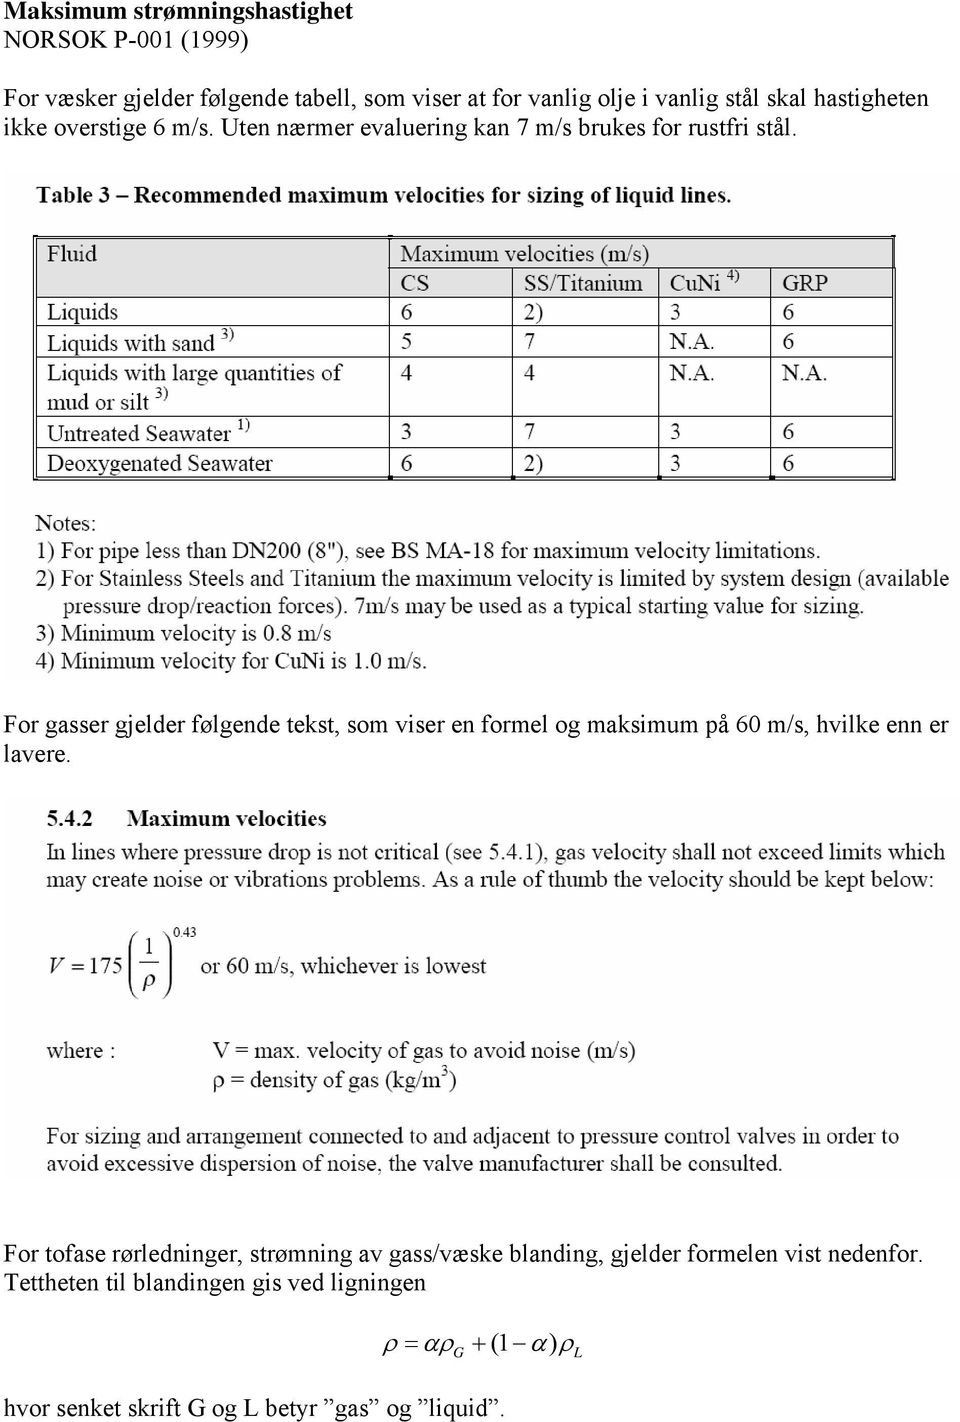 For gasser gjelder følgende tekst, som viser en formel og maksimm å 60 m/s, hvilke enn er lavere.